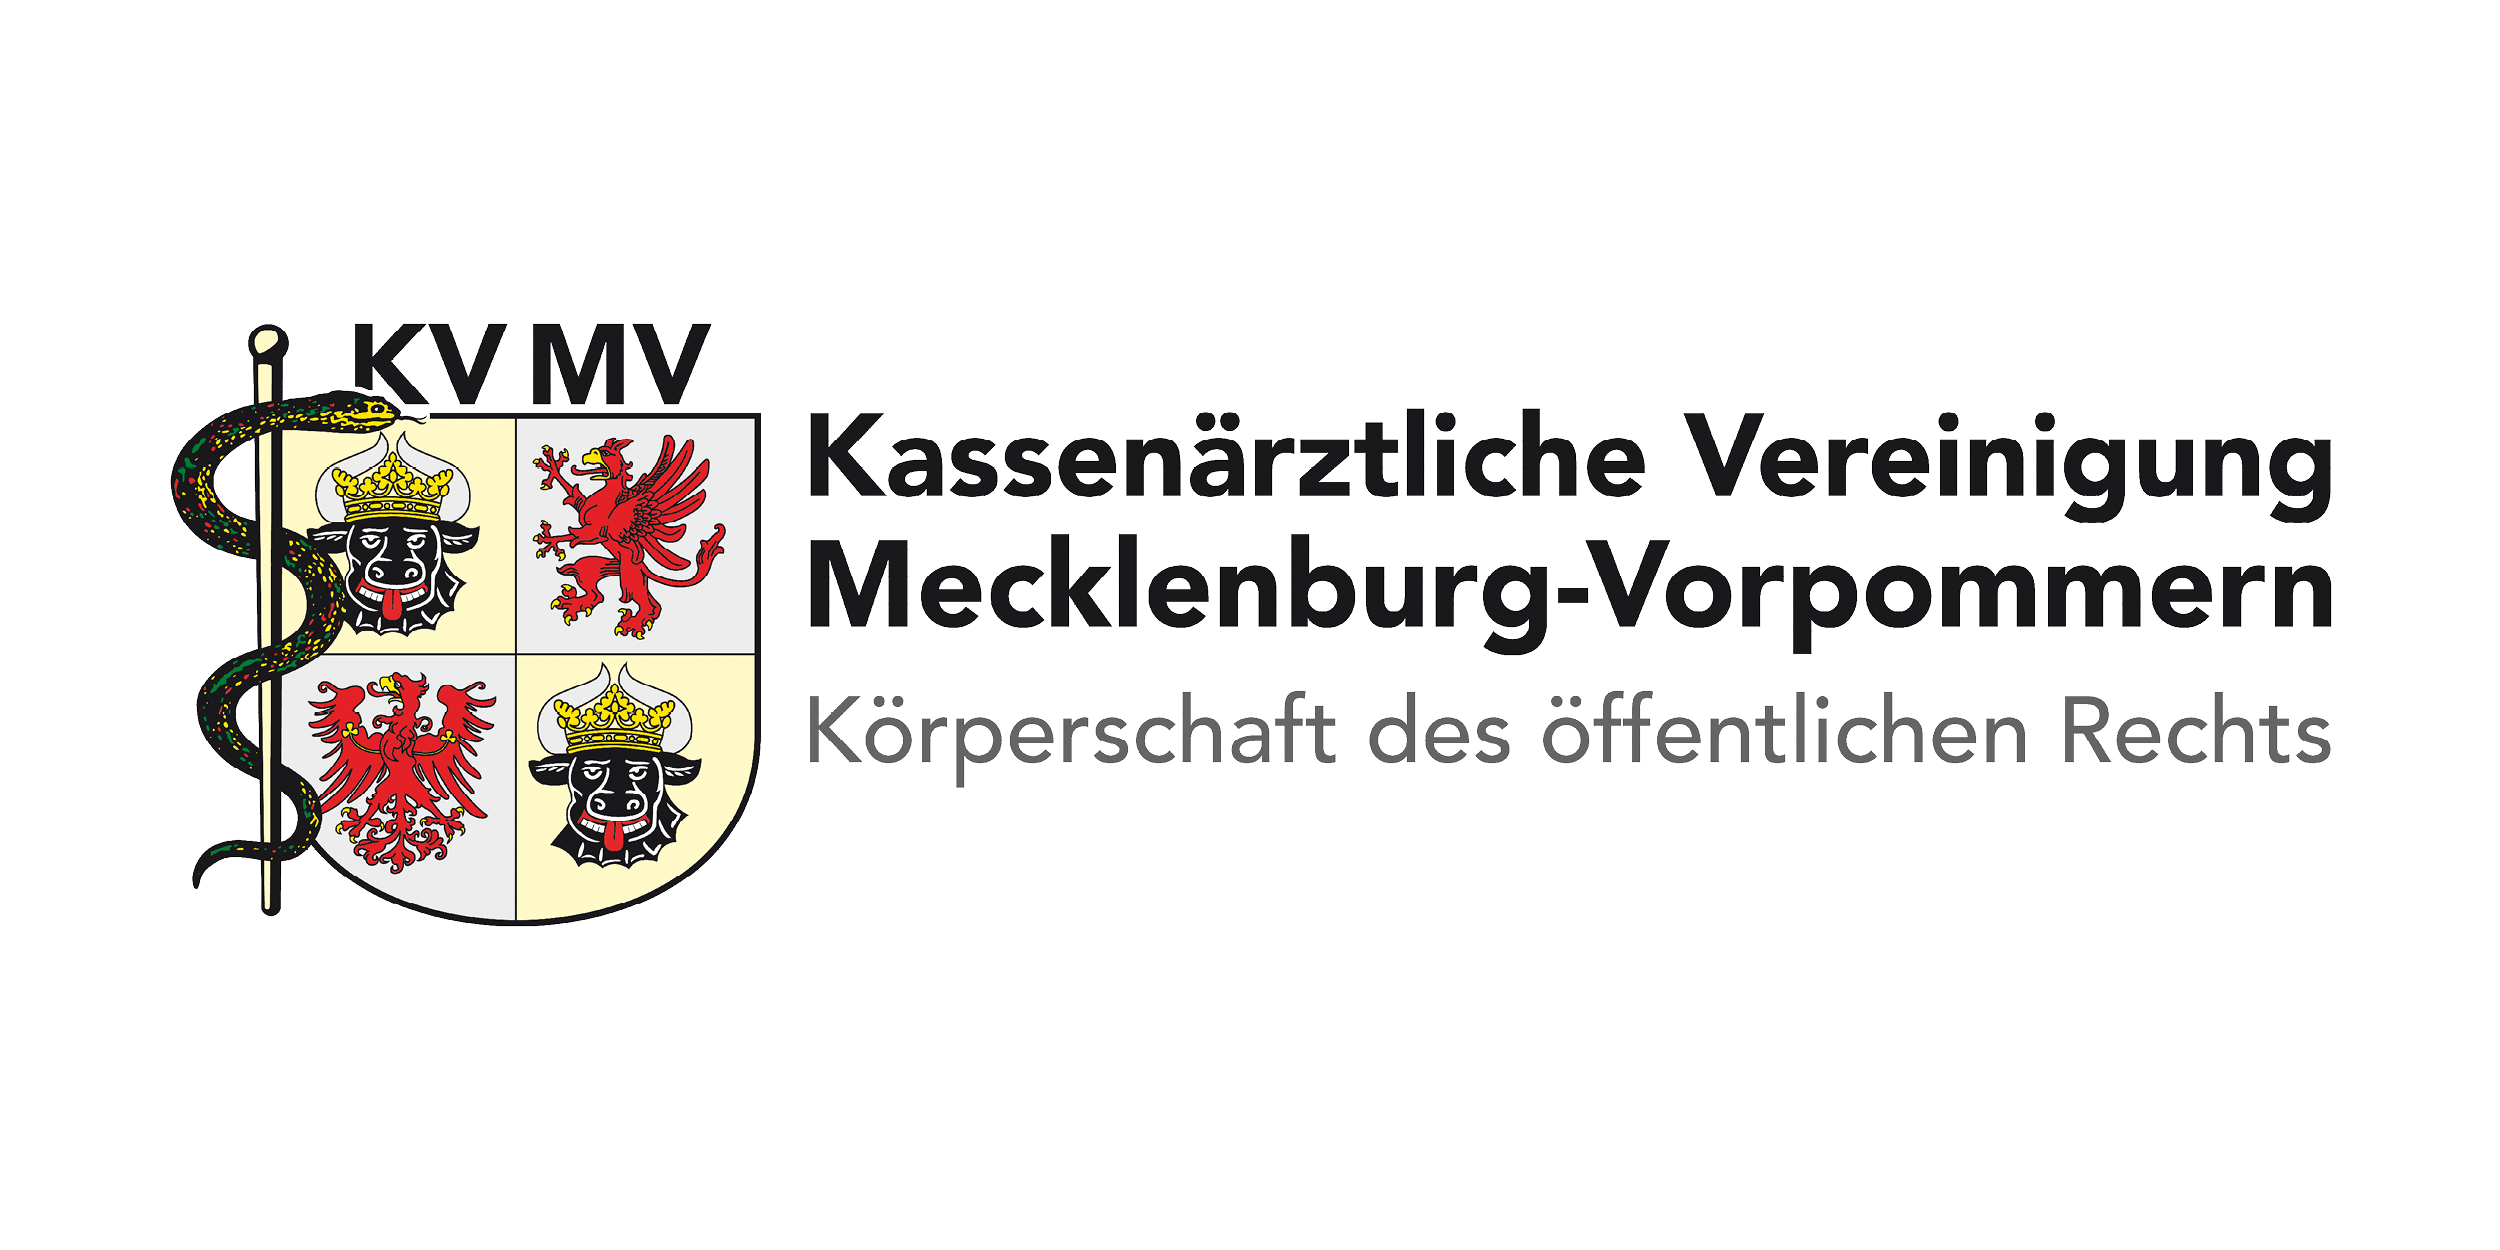 Das Bild zeigt das Logo der KV Mecklenburg-Vorpommern.